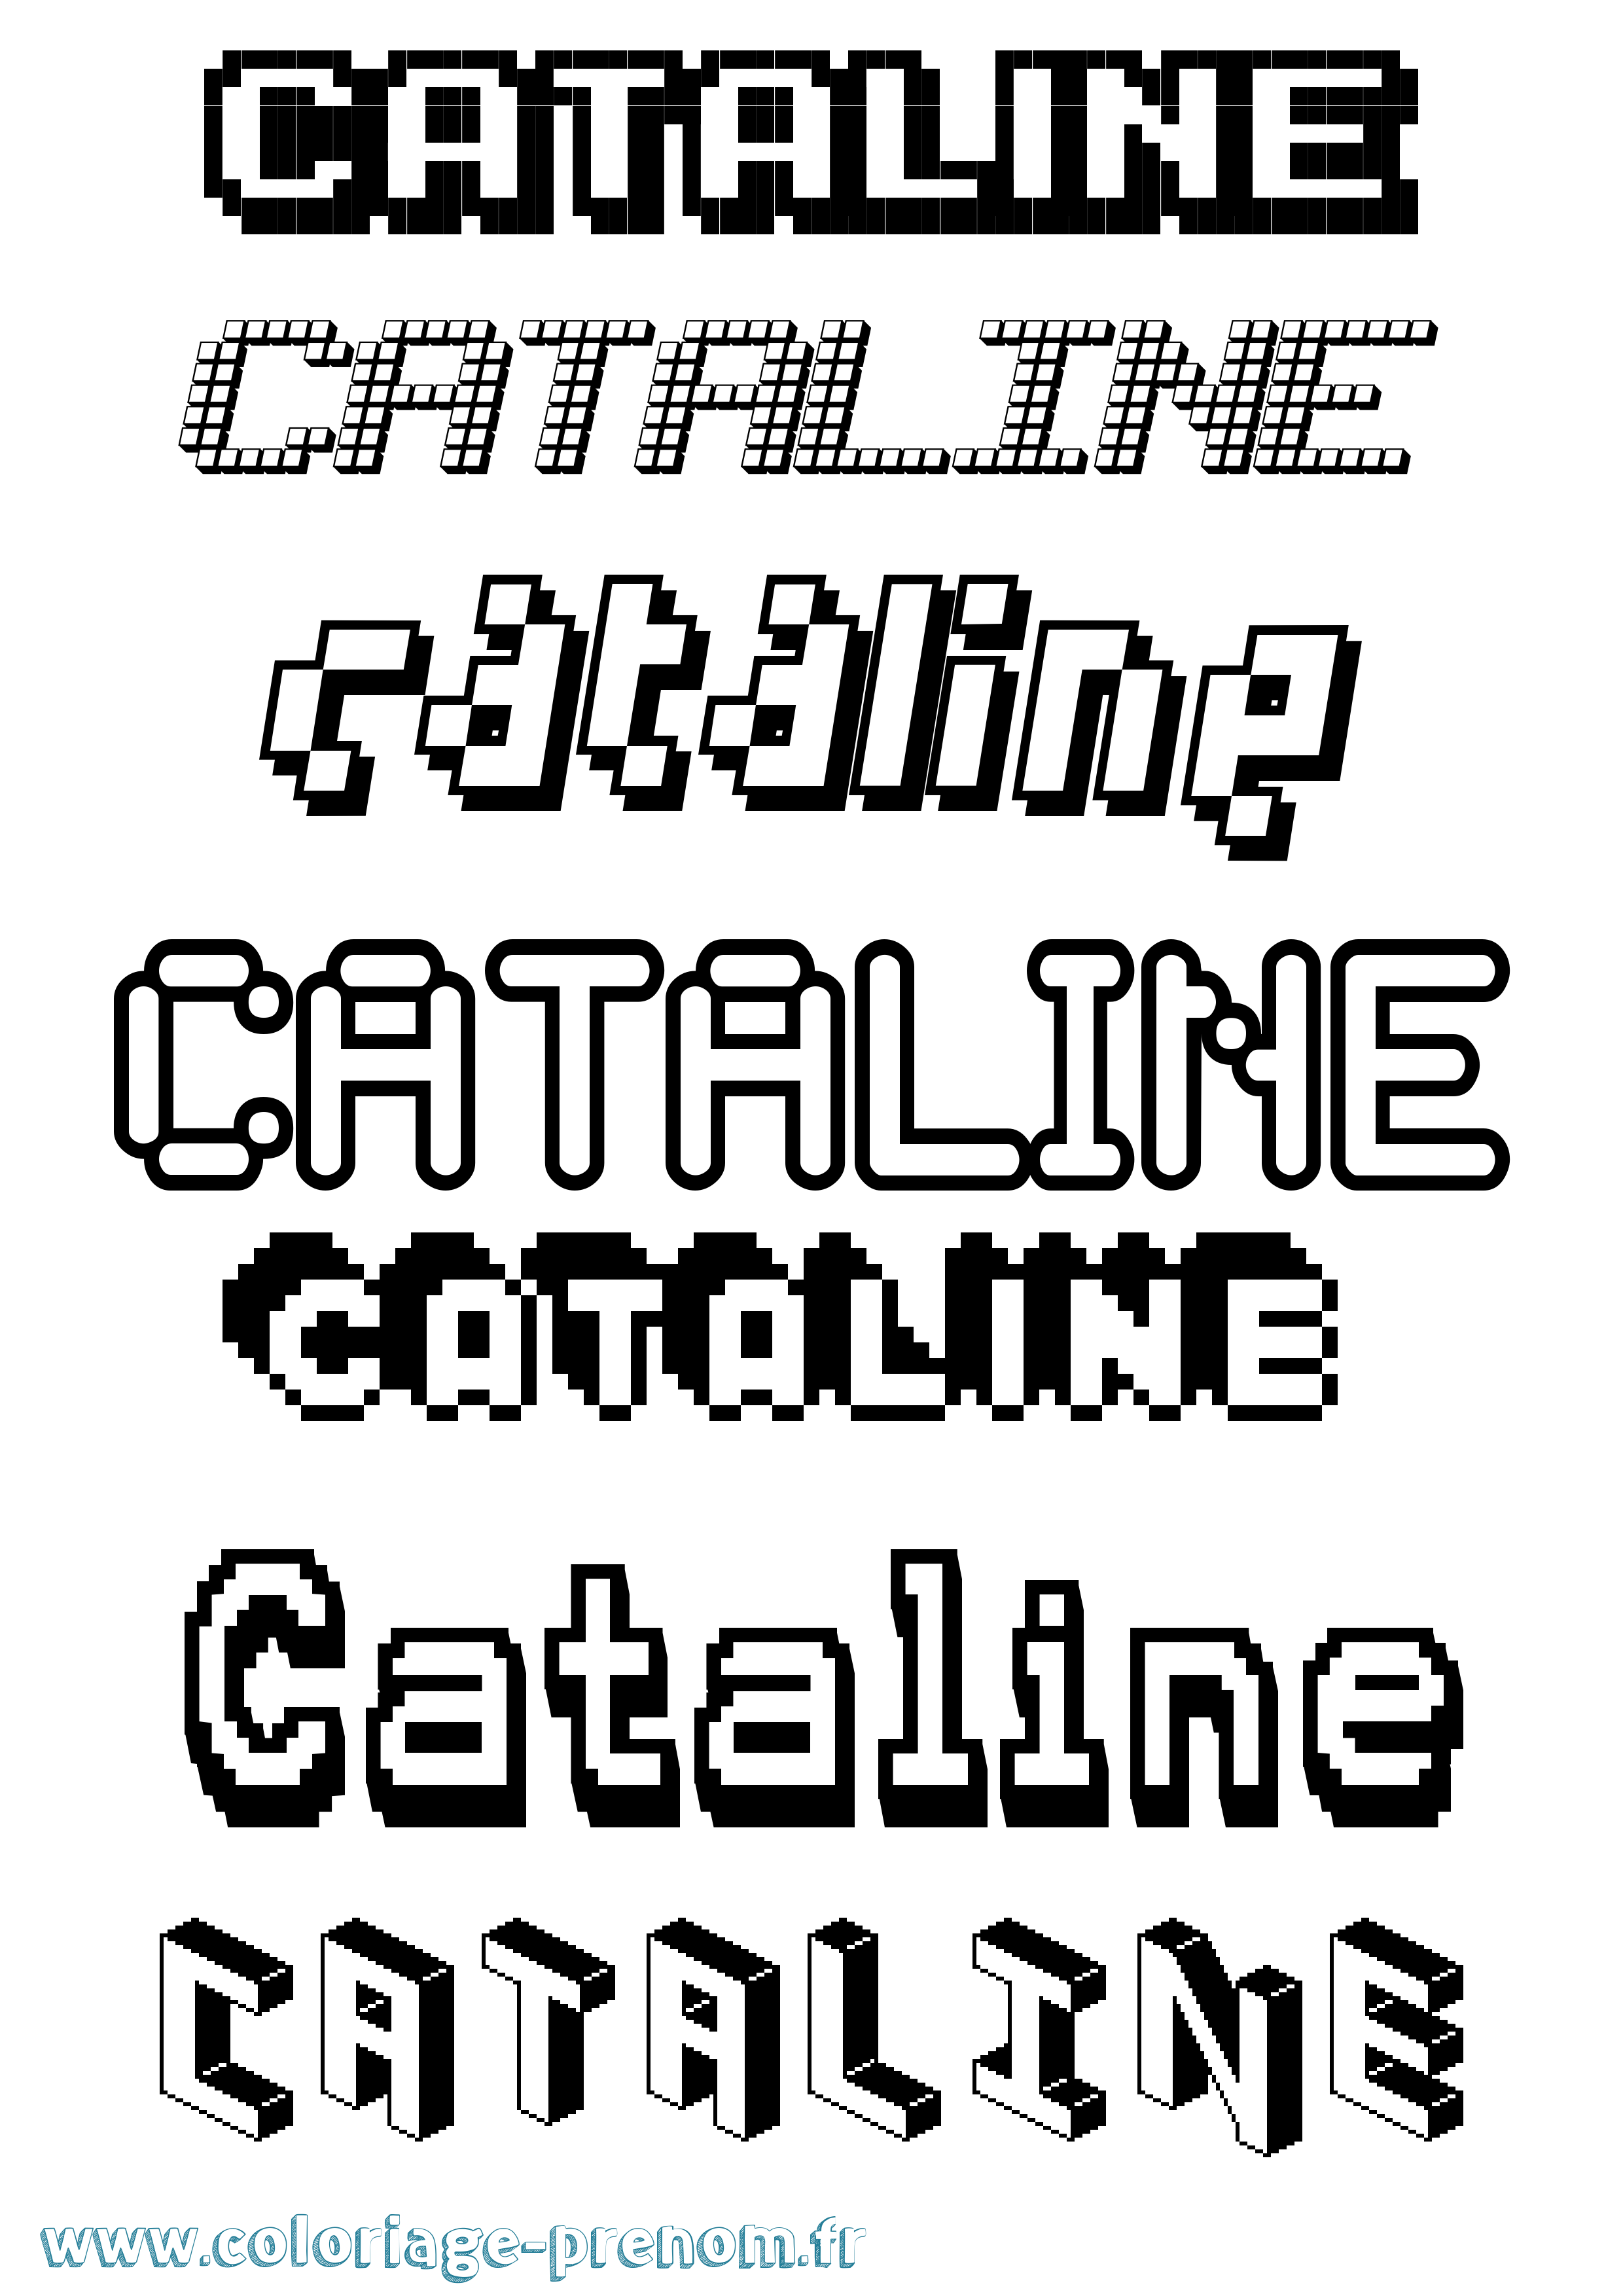 Coloriage prénom Cataline Pixel